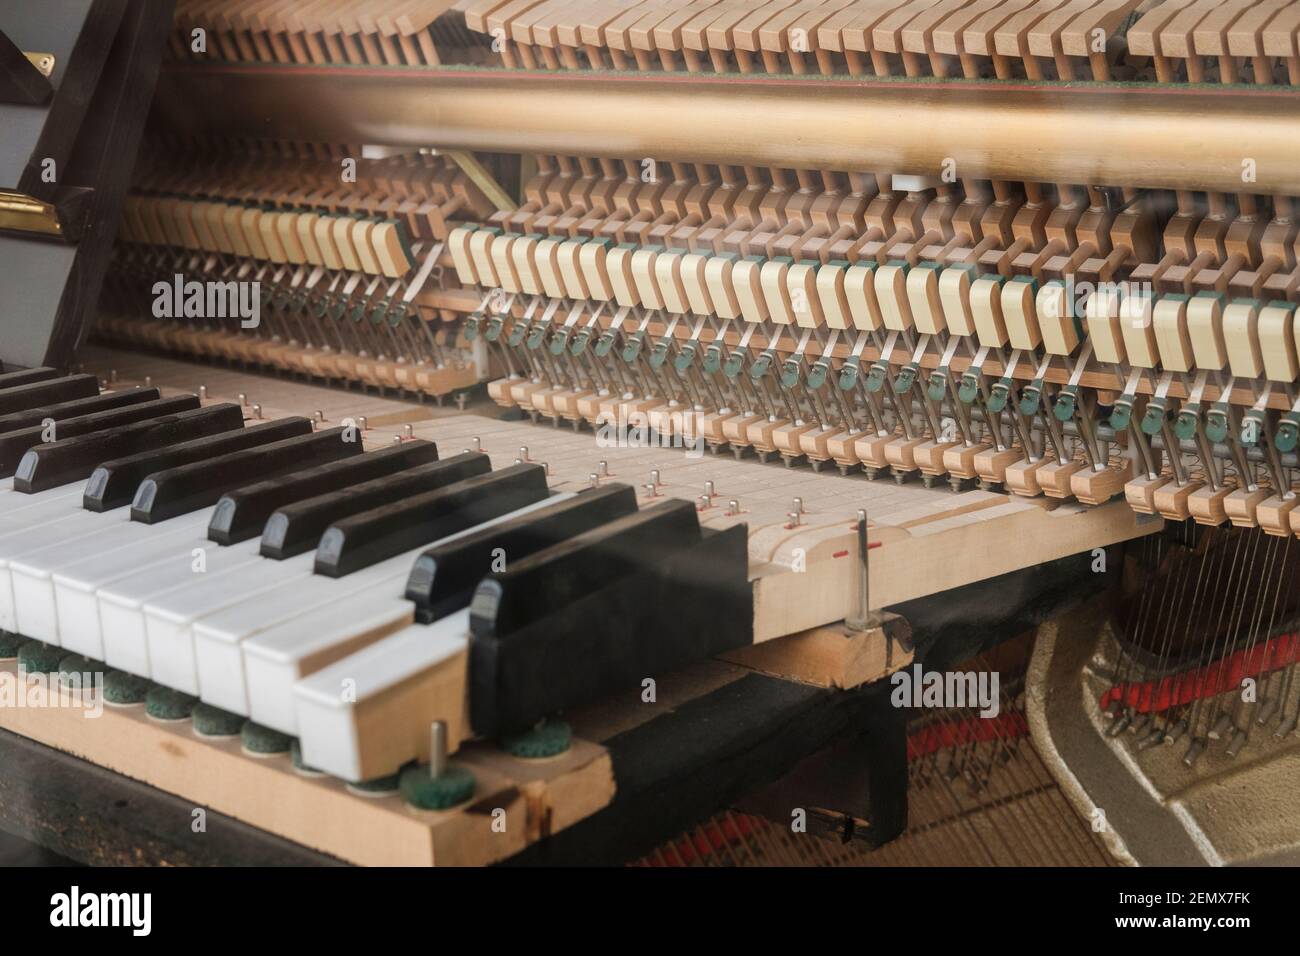 L'interno di un pianoforte è un'impresa di ingegneria, il telaio a corda contiene 30 tonnellate di tensione, creato da circa 230 corde che compongono 88 passi. Th Foto Stock